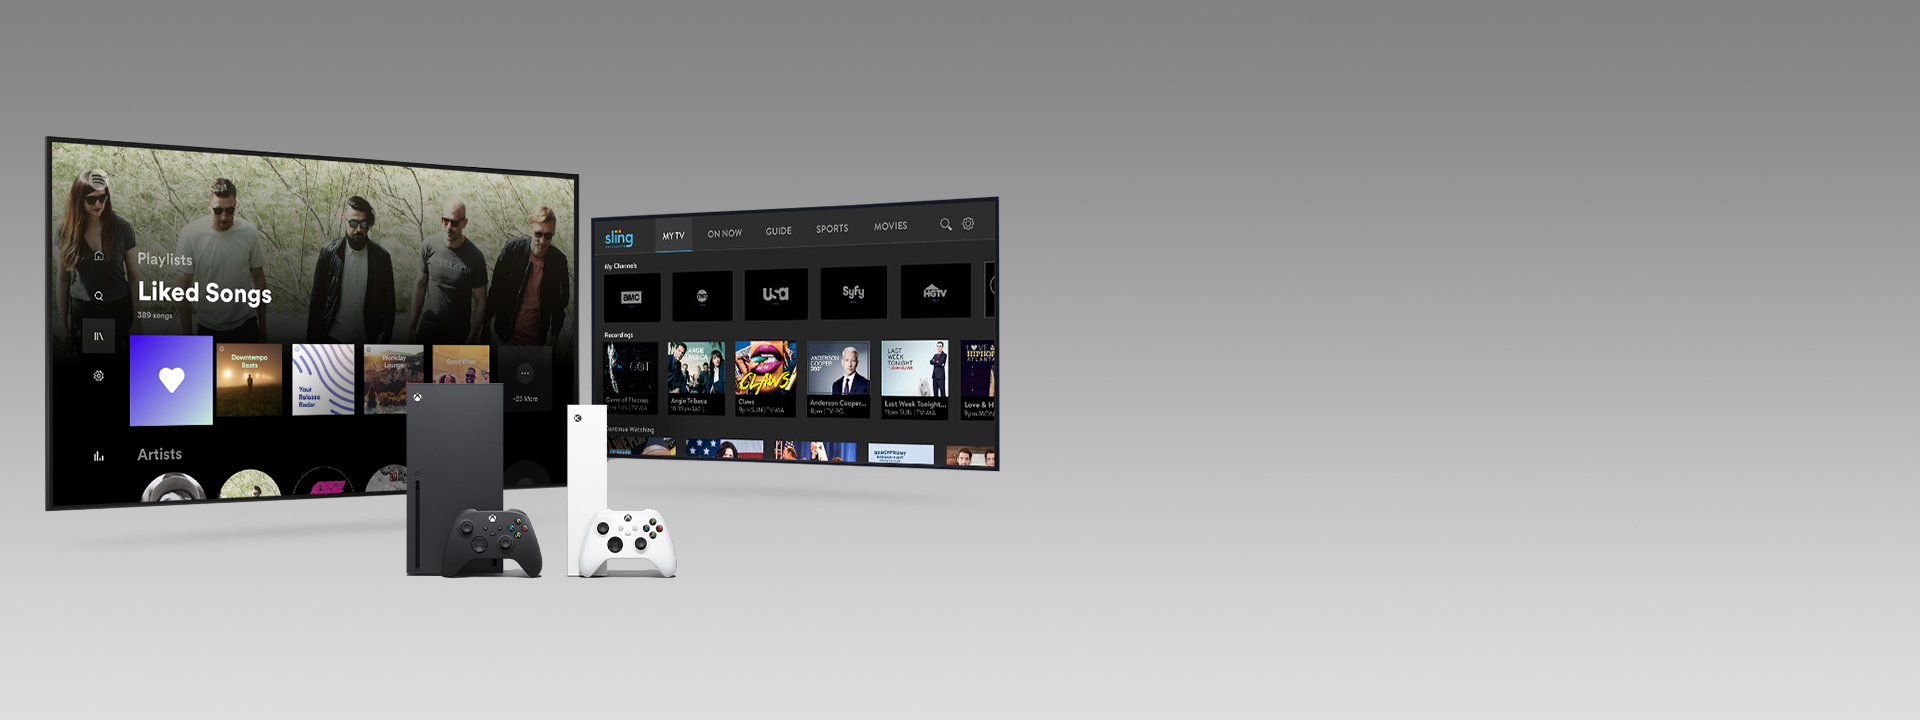 アプリのユーザー インターフェイスを表示した 2 つのテレビ画面の前にある Xbox Series X と Series S コントローラー。